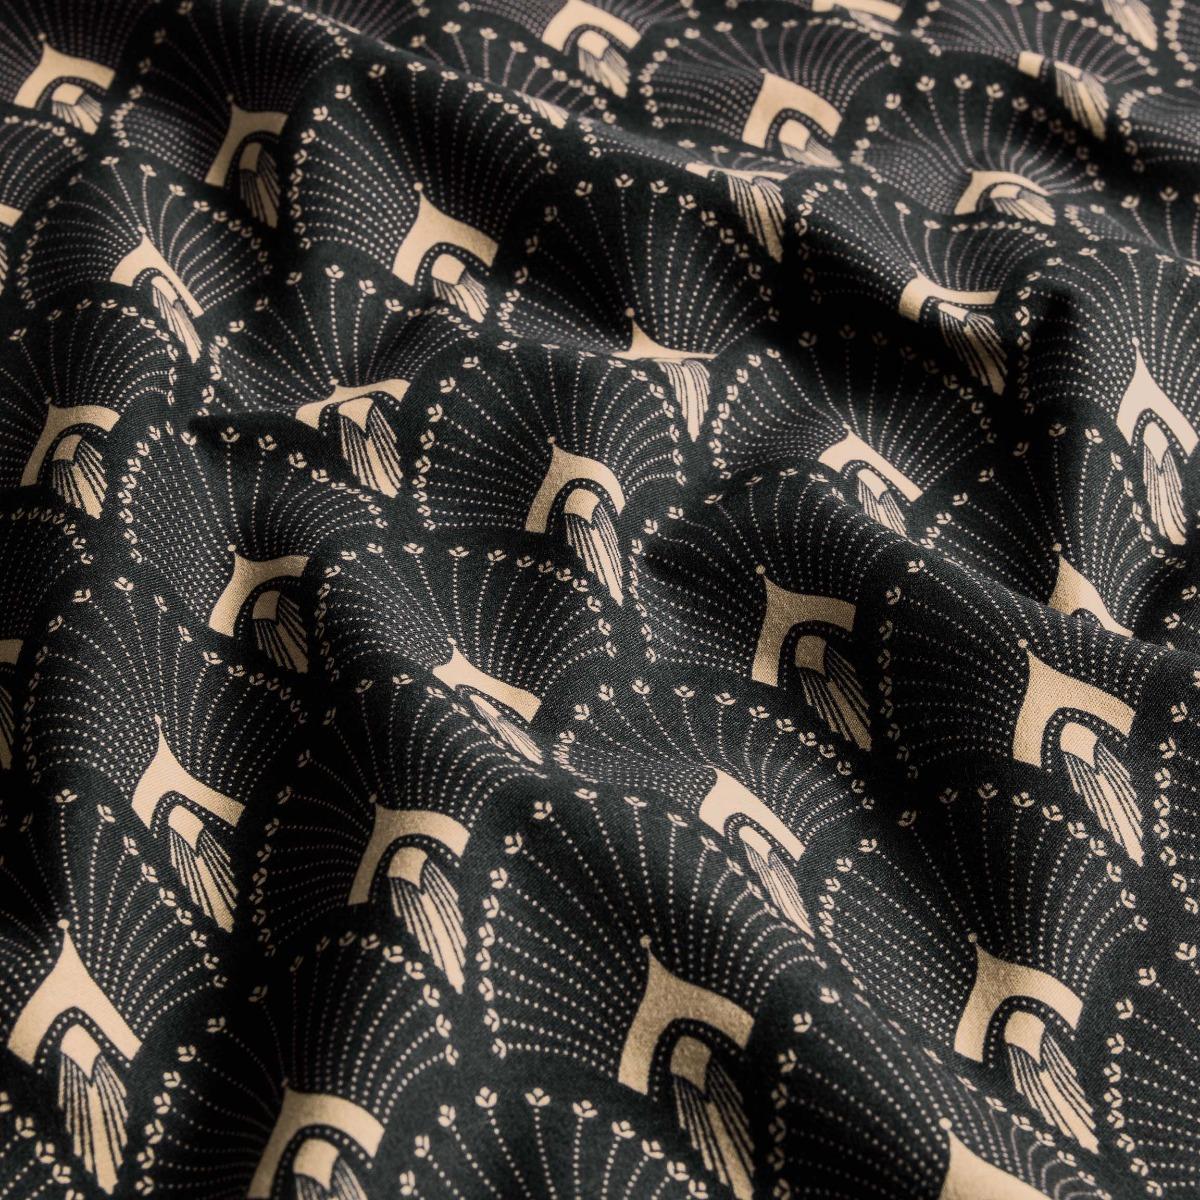 Комплект постельного белья Togas Ландер чёрный с серым Кинг сайз, цвет серый, размер Кинг сайз - фото 10